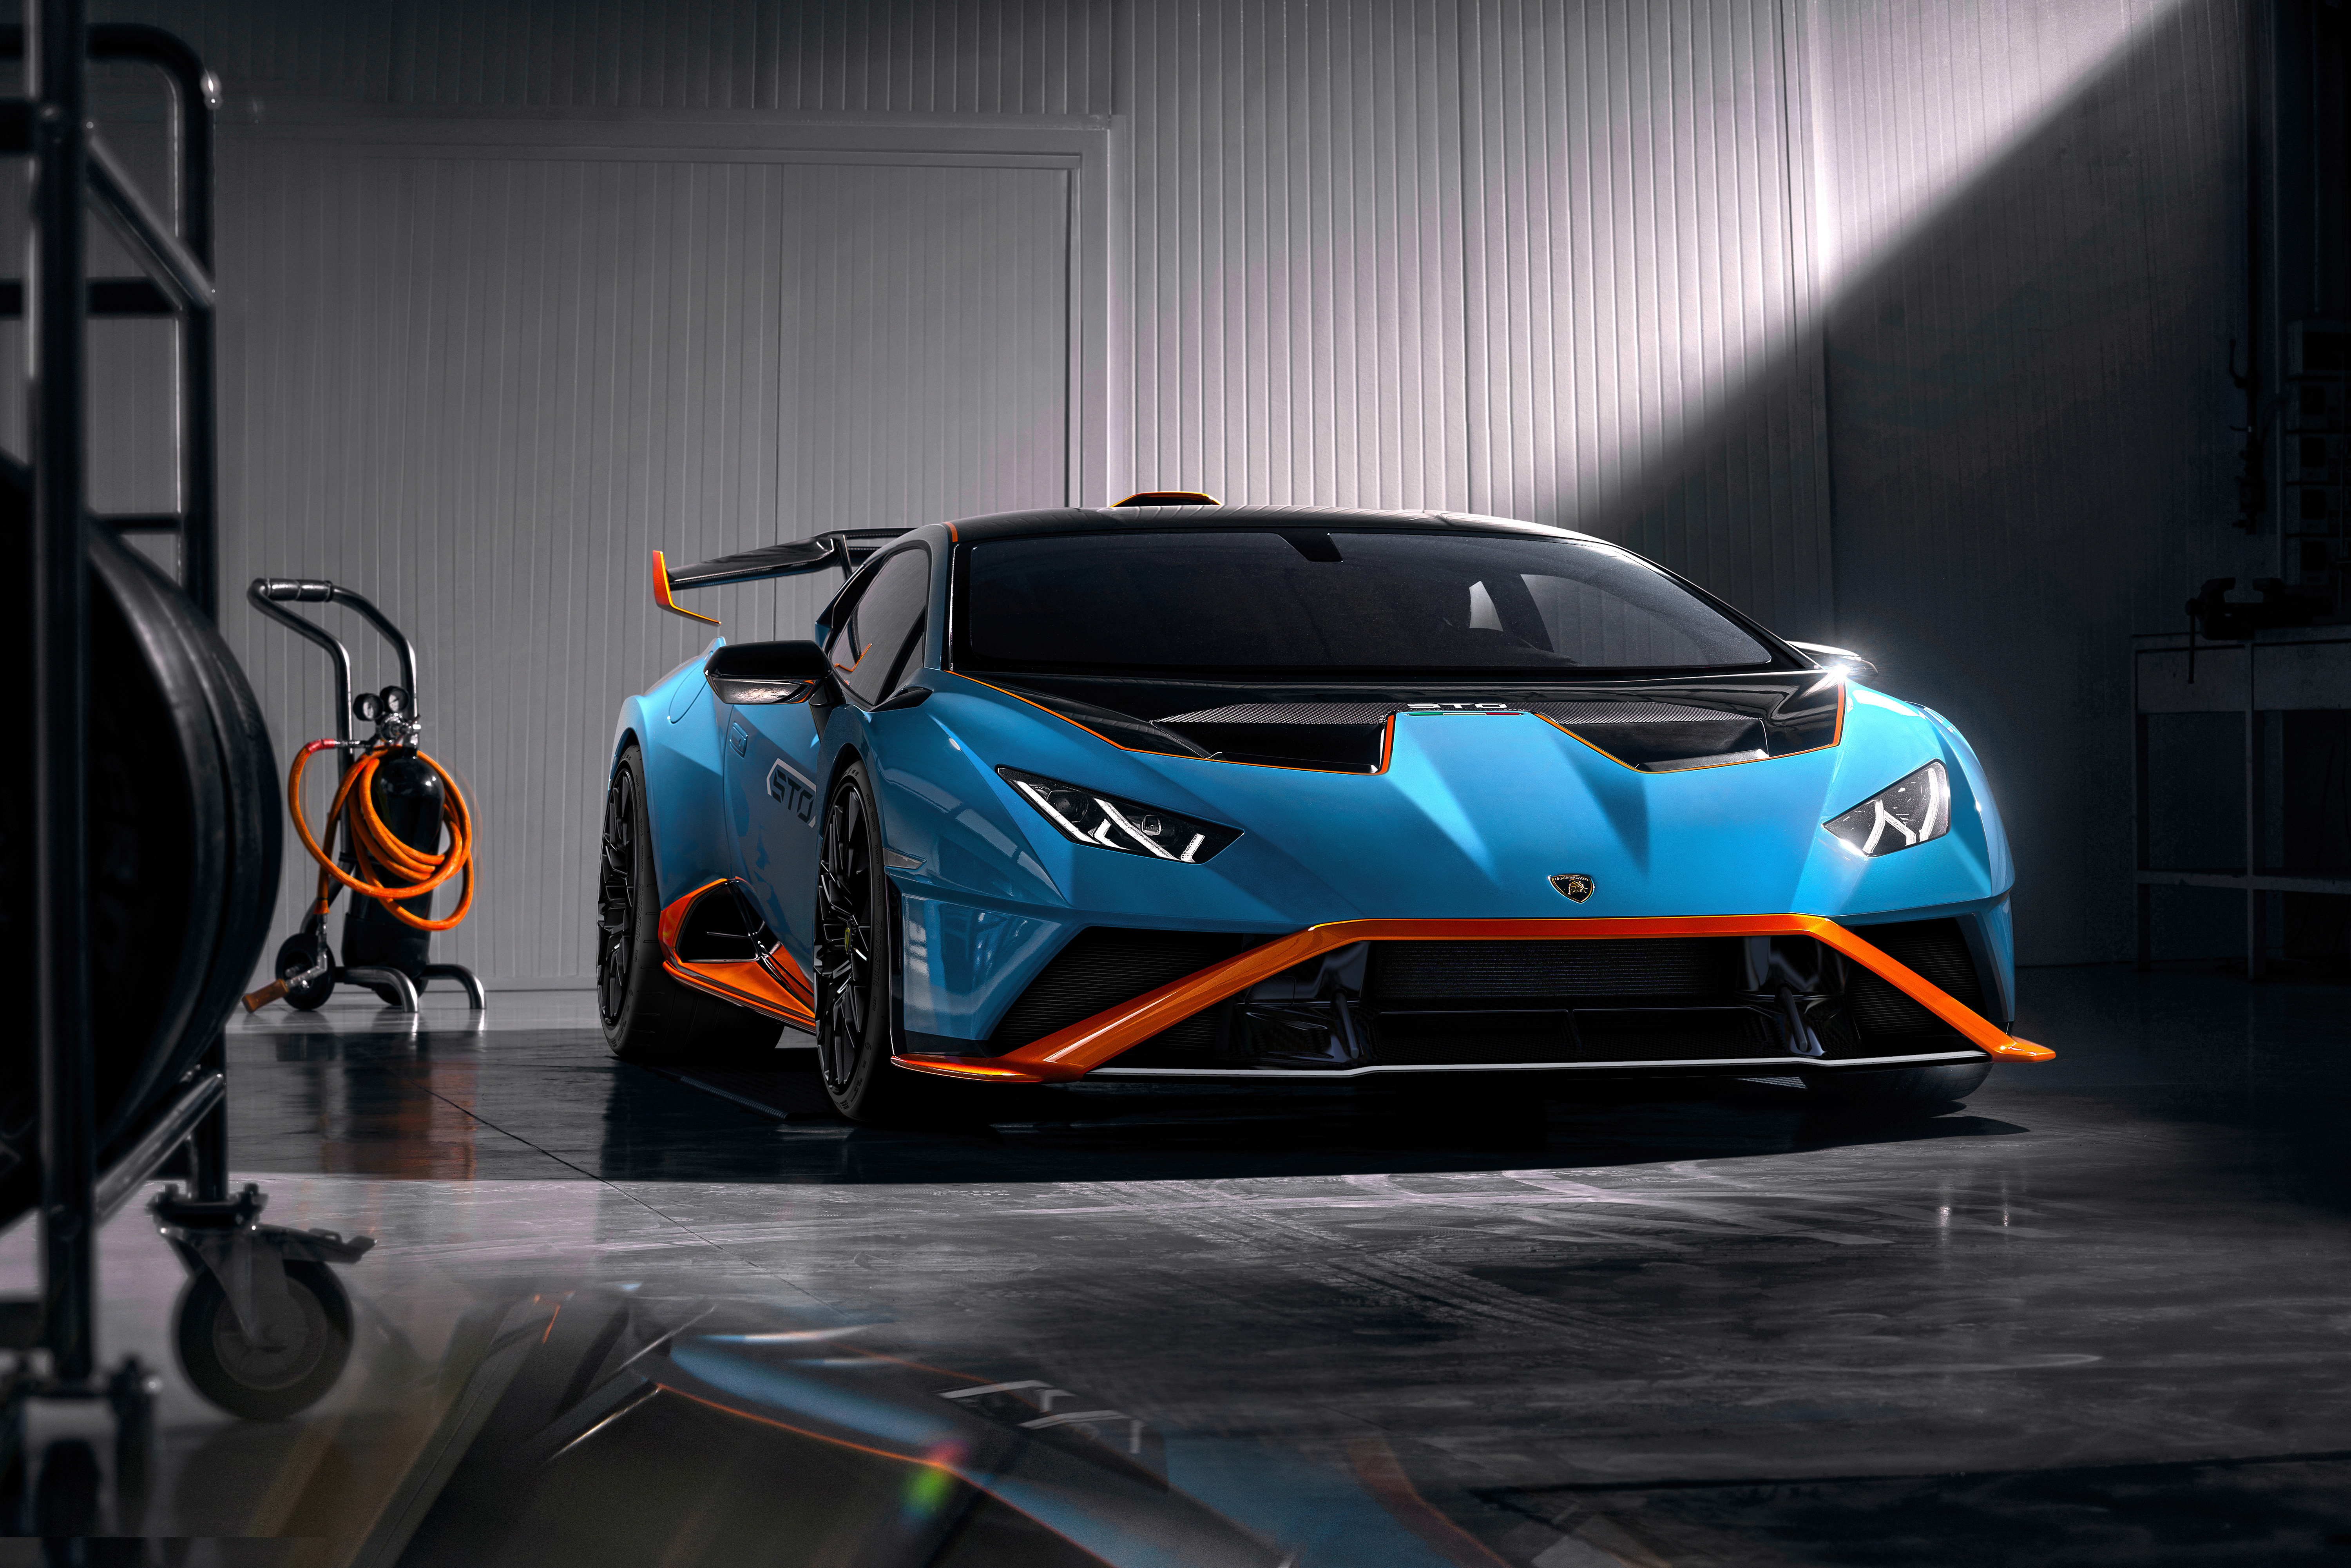 Siêu xe Lamborghini Huracán STO được phát triển từ kinh nghiệm của đội đua và sử dụng công nghệ tiên tiến nhất. Đây là một trong những mẫu xe thể thao hàng đầu trên thế giới. Bạn sẽ bị thu hút bởi kiểu dáng mạnh mẽ, tốc độ đáng kinh ngạc và trải nghiệm lái xe thật tuyệt vời.